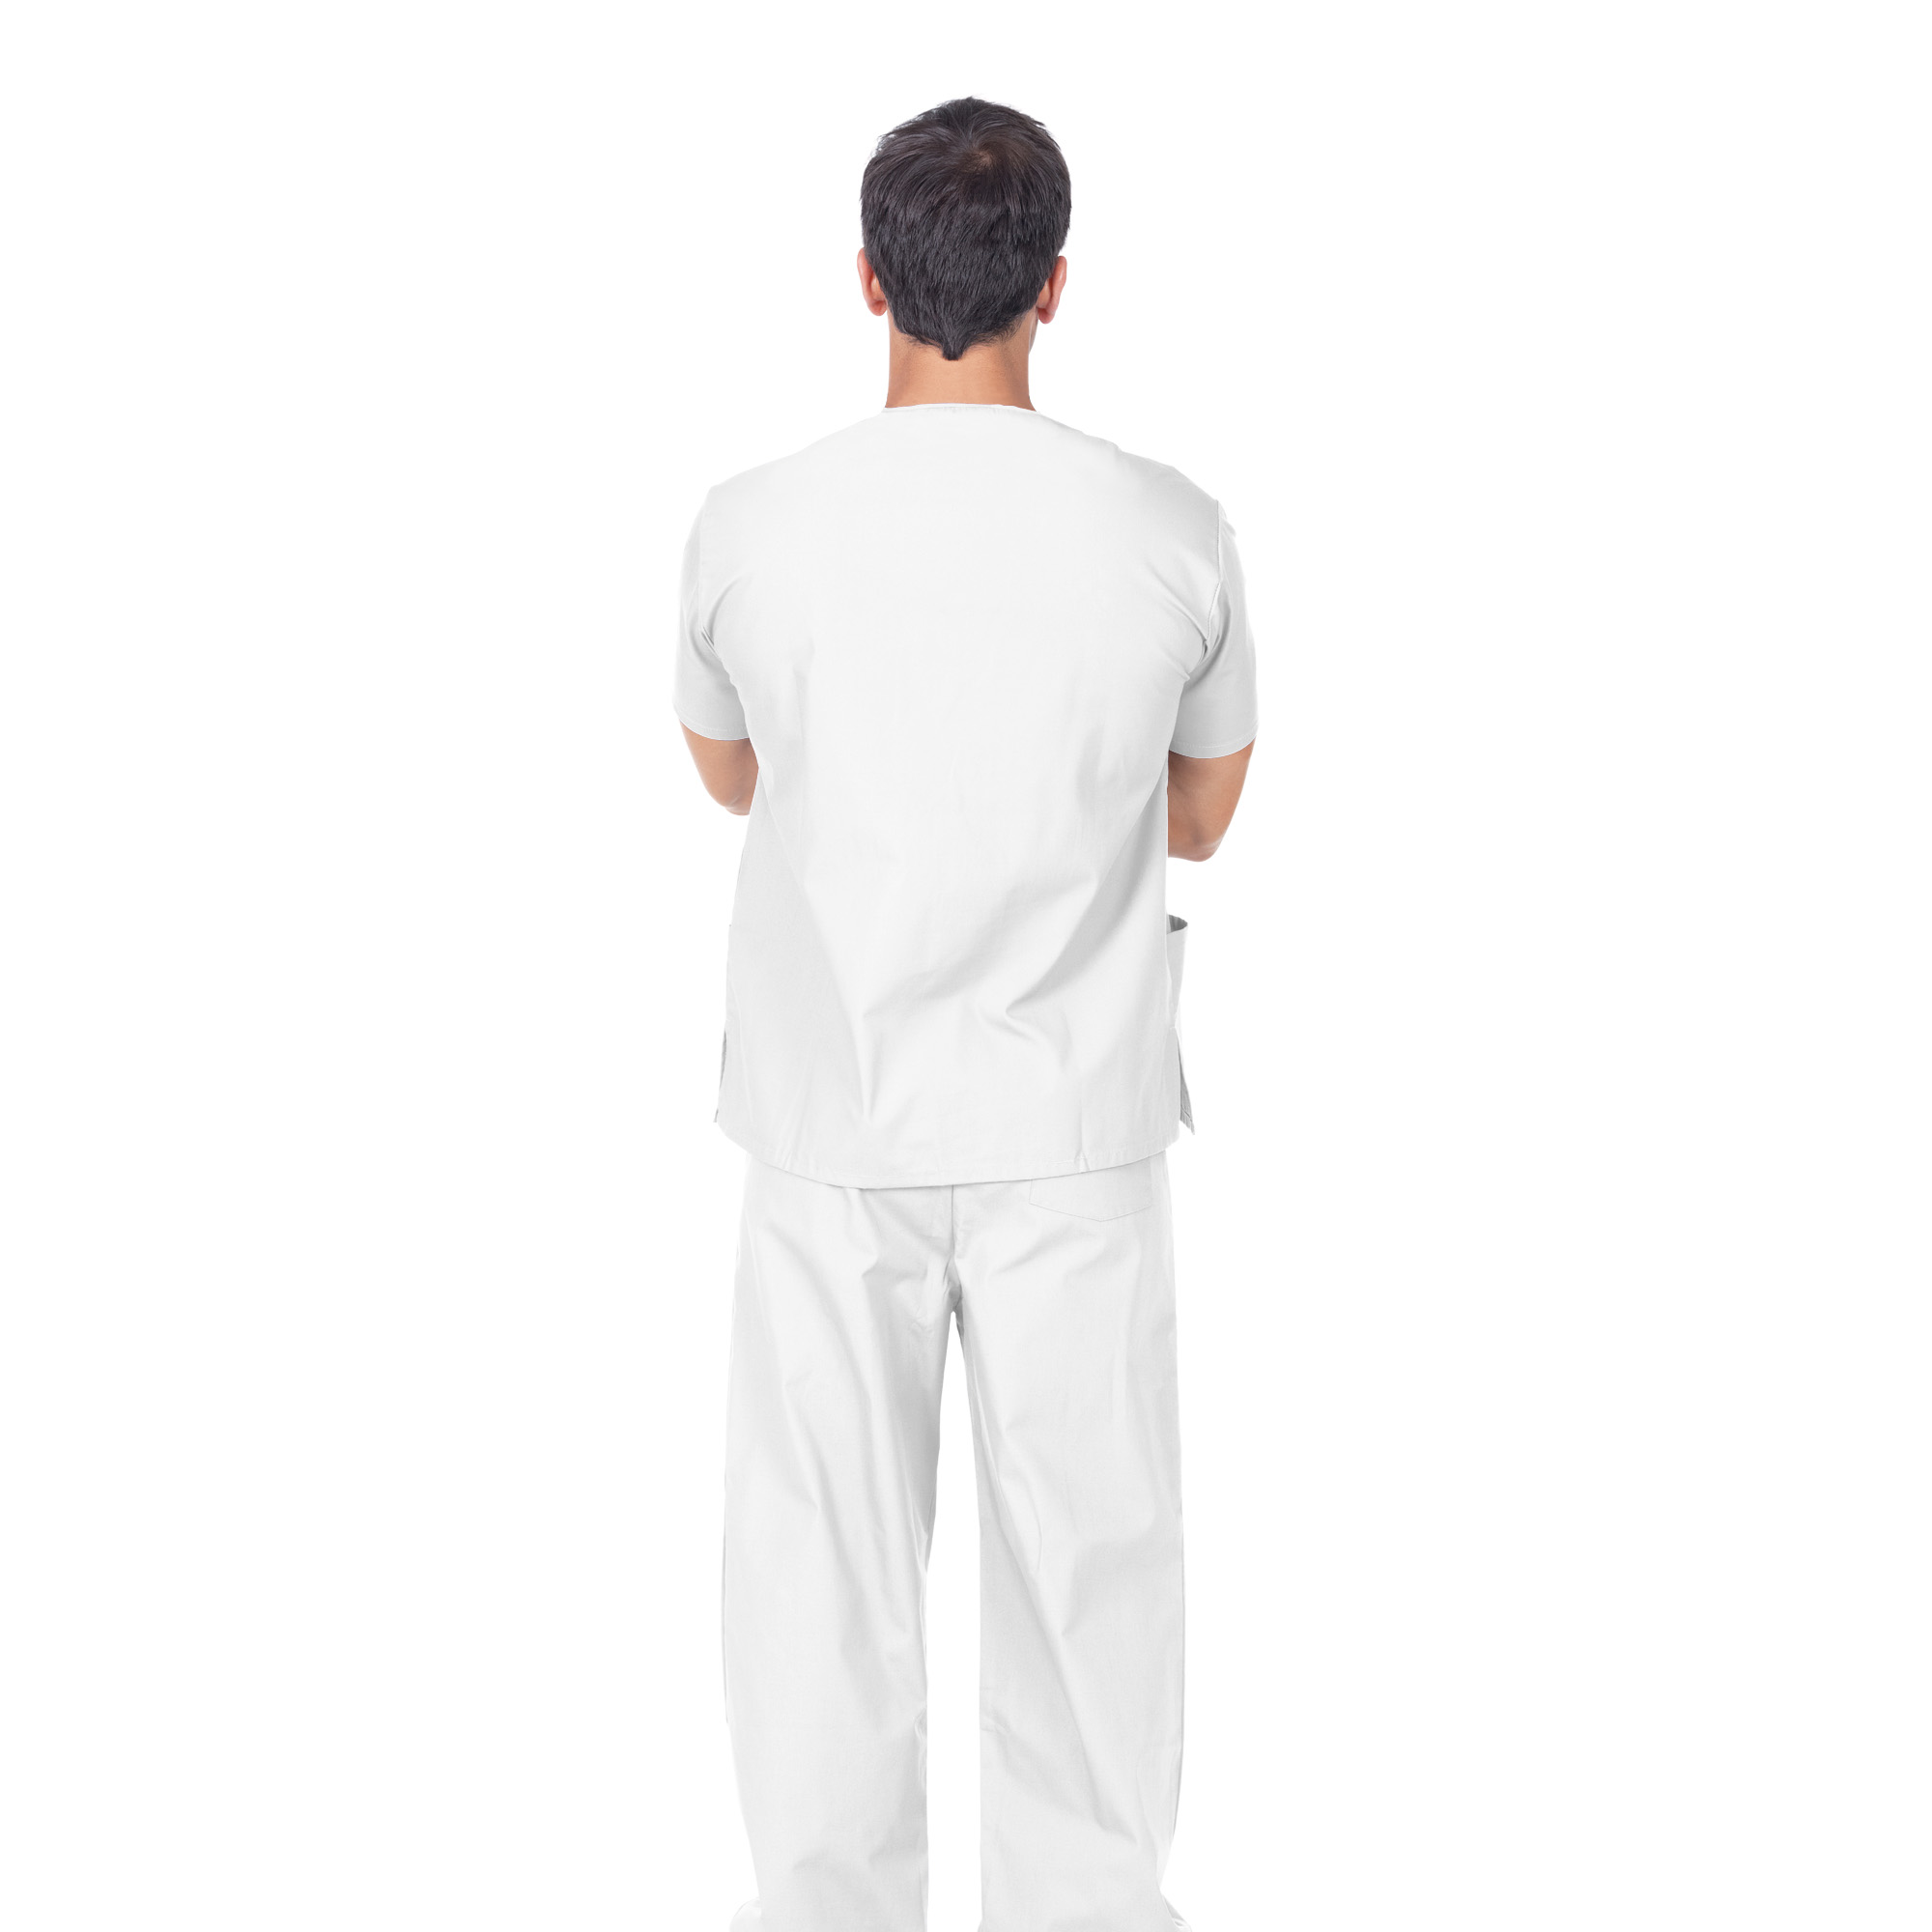 Pantalon professionnel en coton blanc Unisex